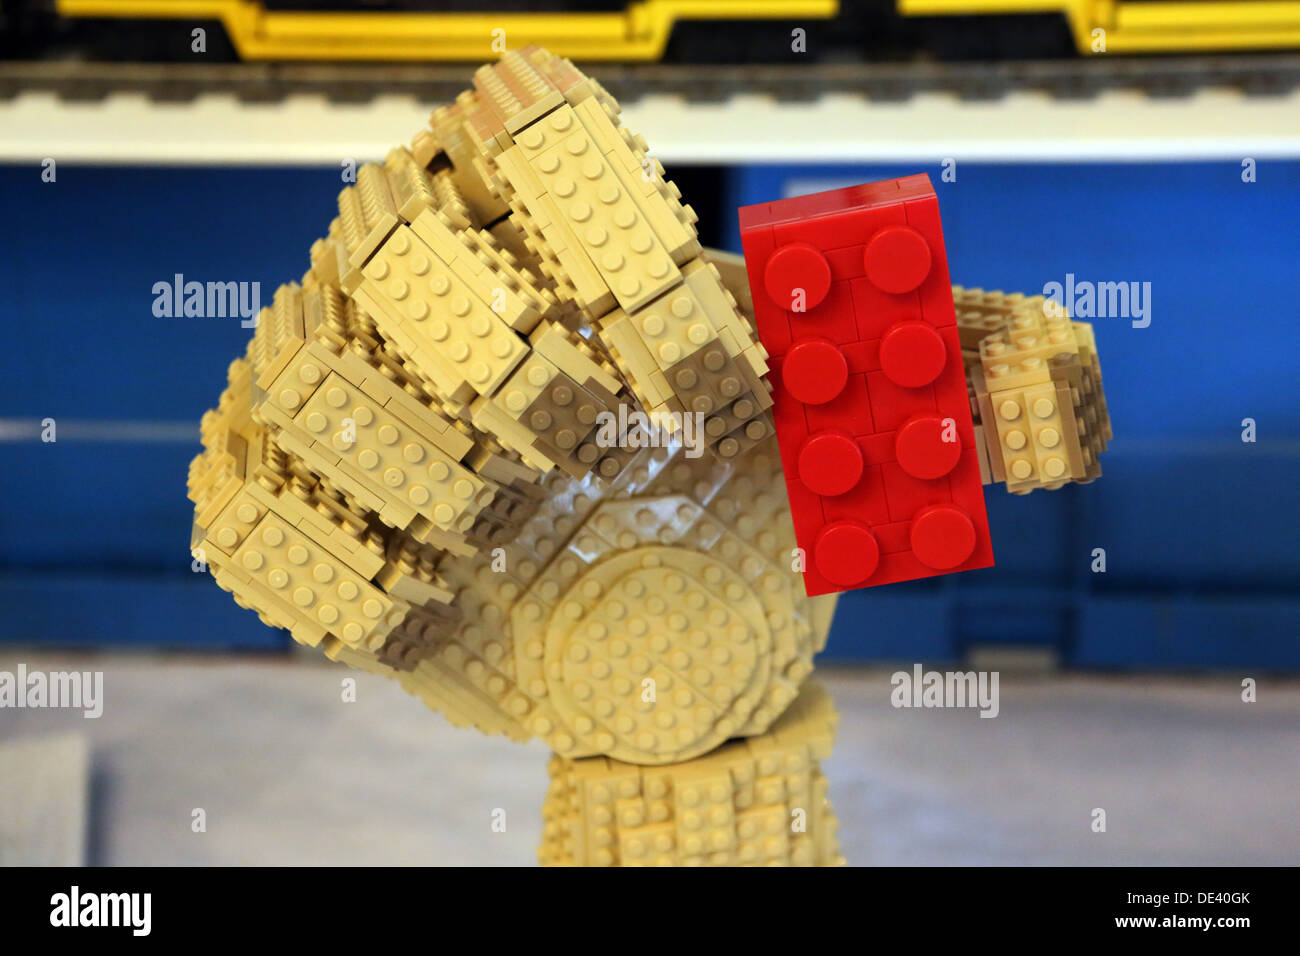 Berlín, Alemania, la mano sujeta firmemente un edificio de ladrillos de Lego Lego Foto de stock